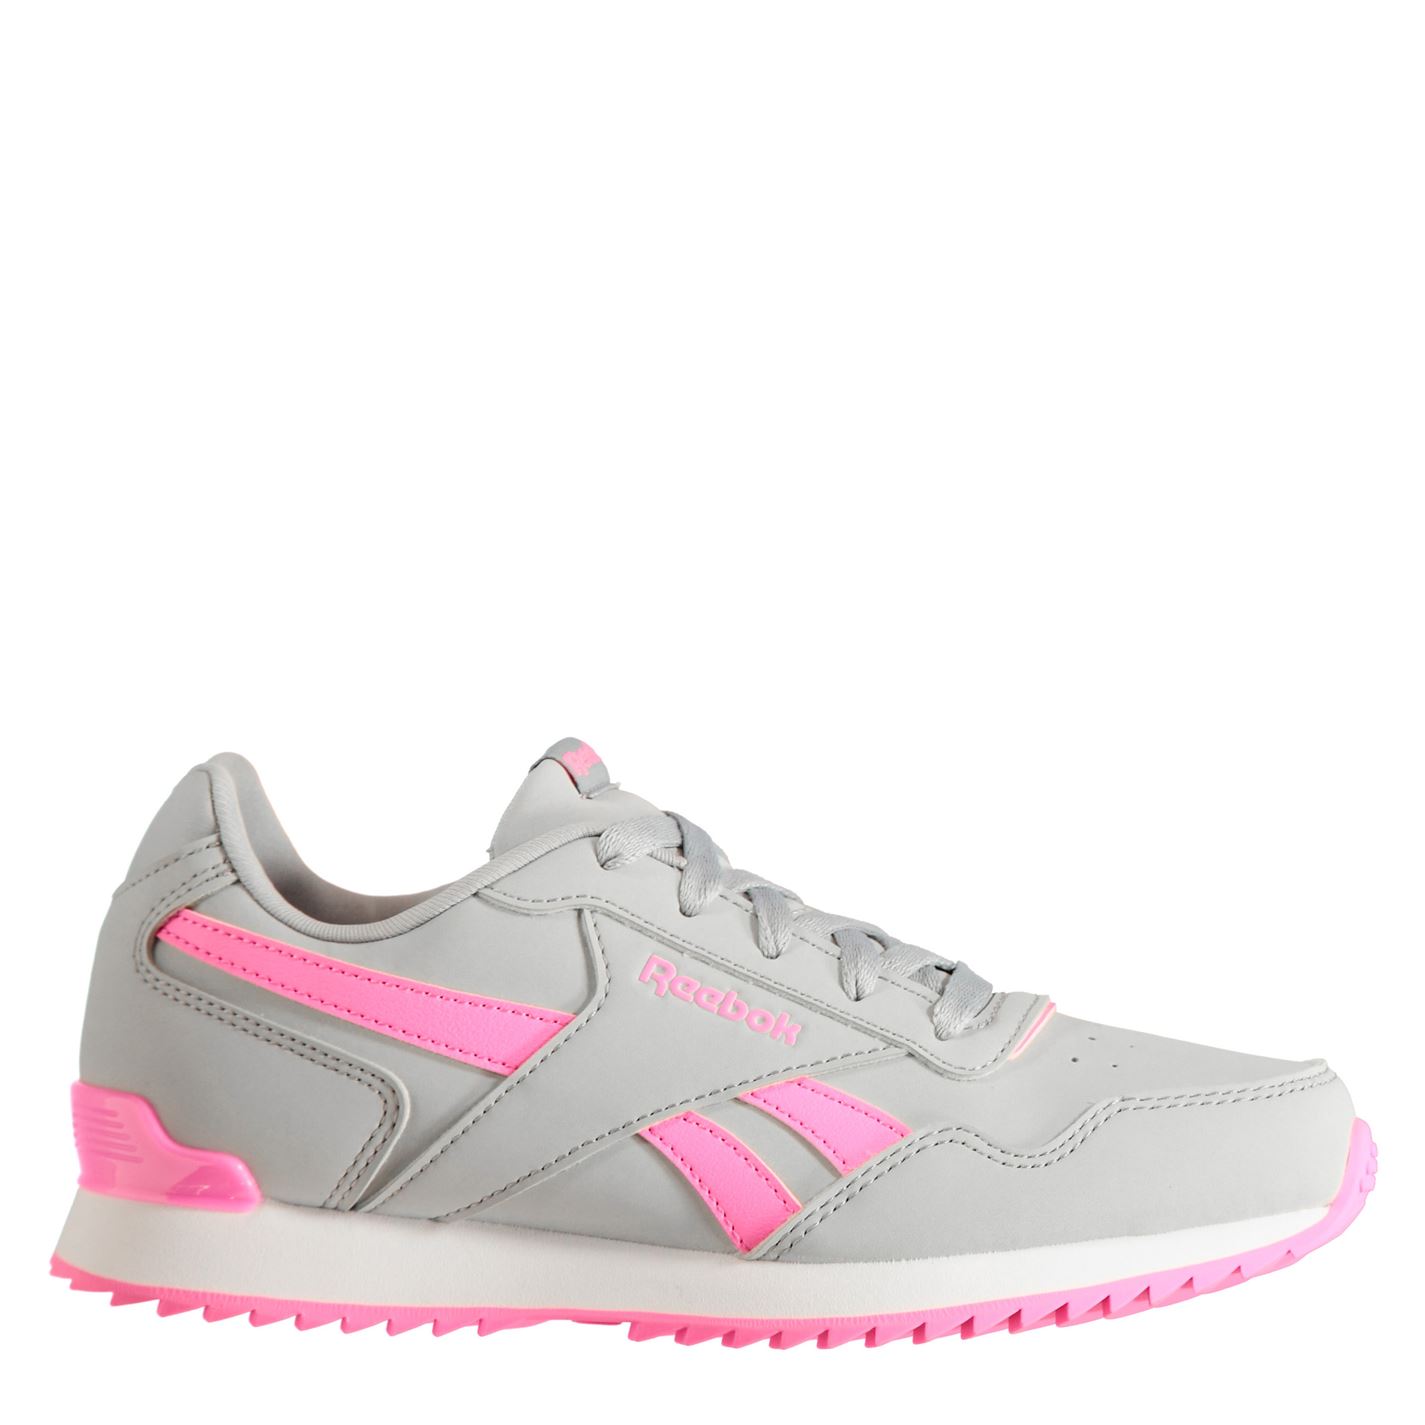 Adidasi sport Reebok Glide Rip Clip Child pentru fete gri roz